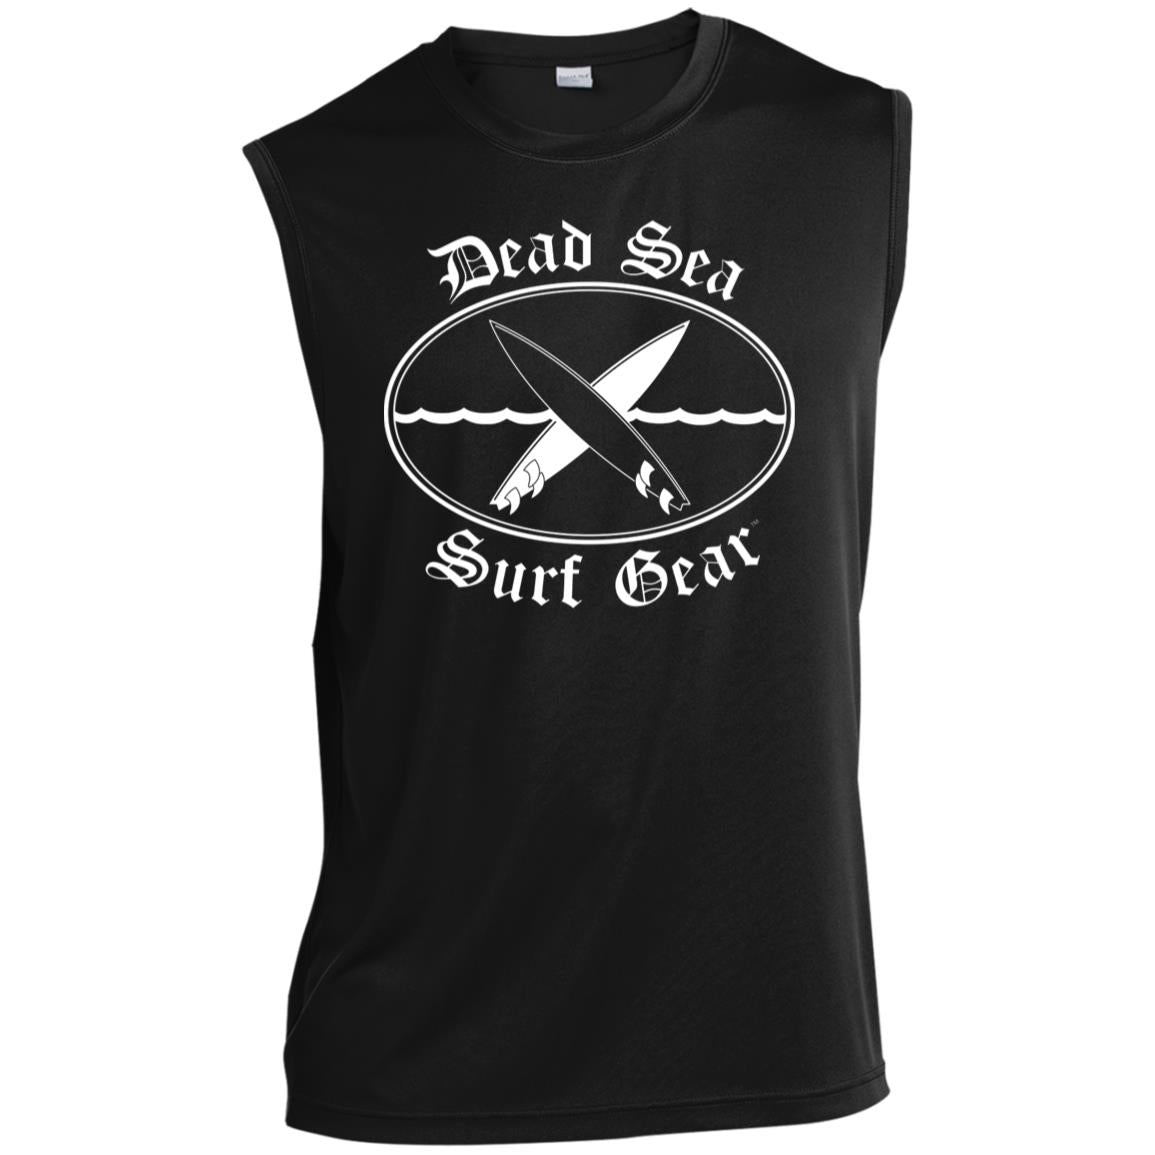 Dead Sea Surf Gear Men’s Sleeveless Performance Shirt